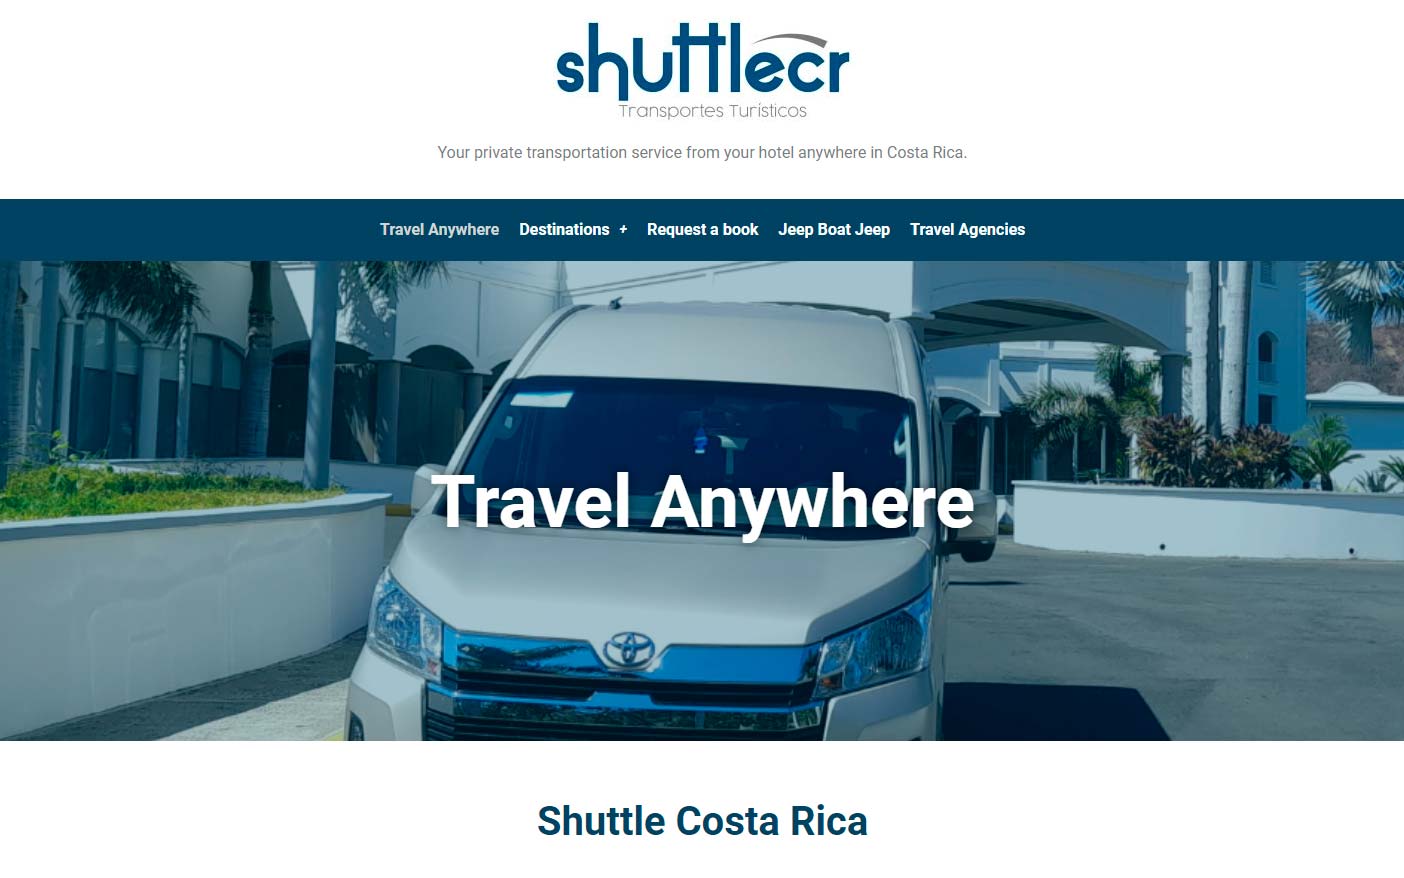 Shuttle Costa Rica